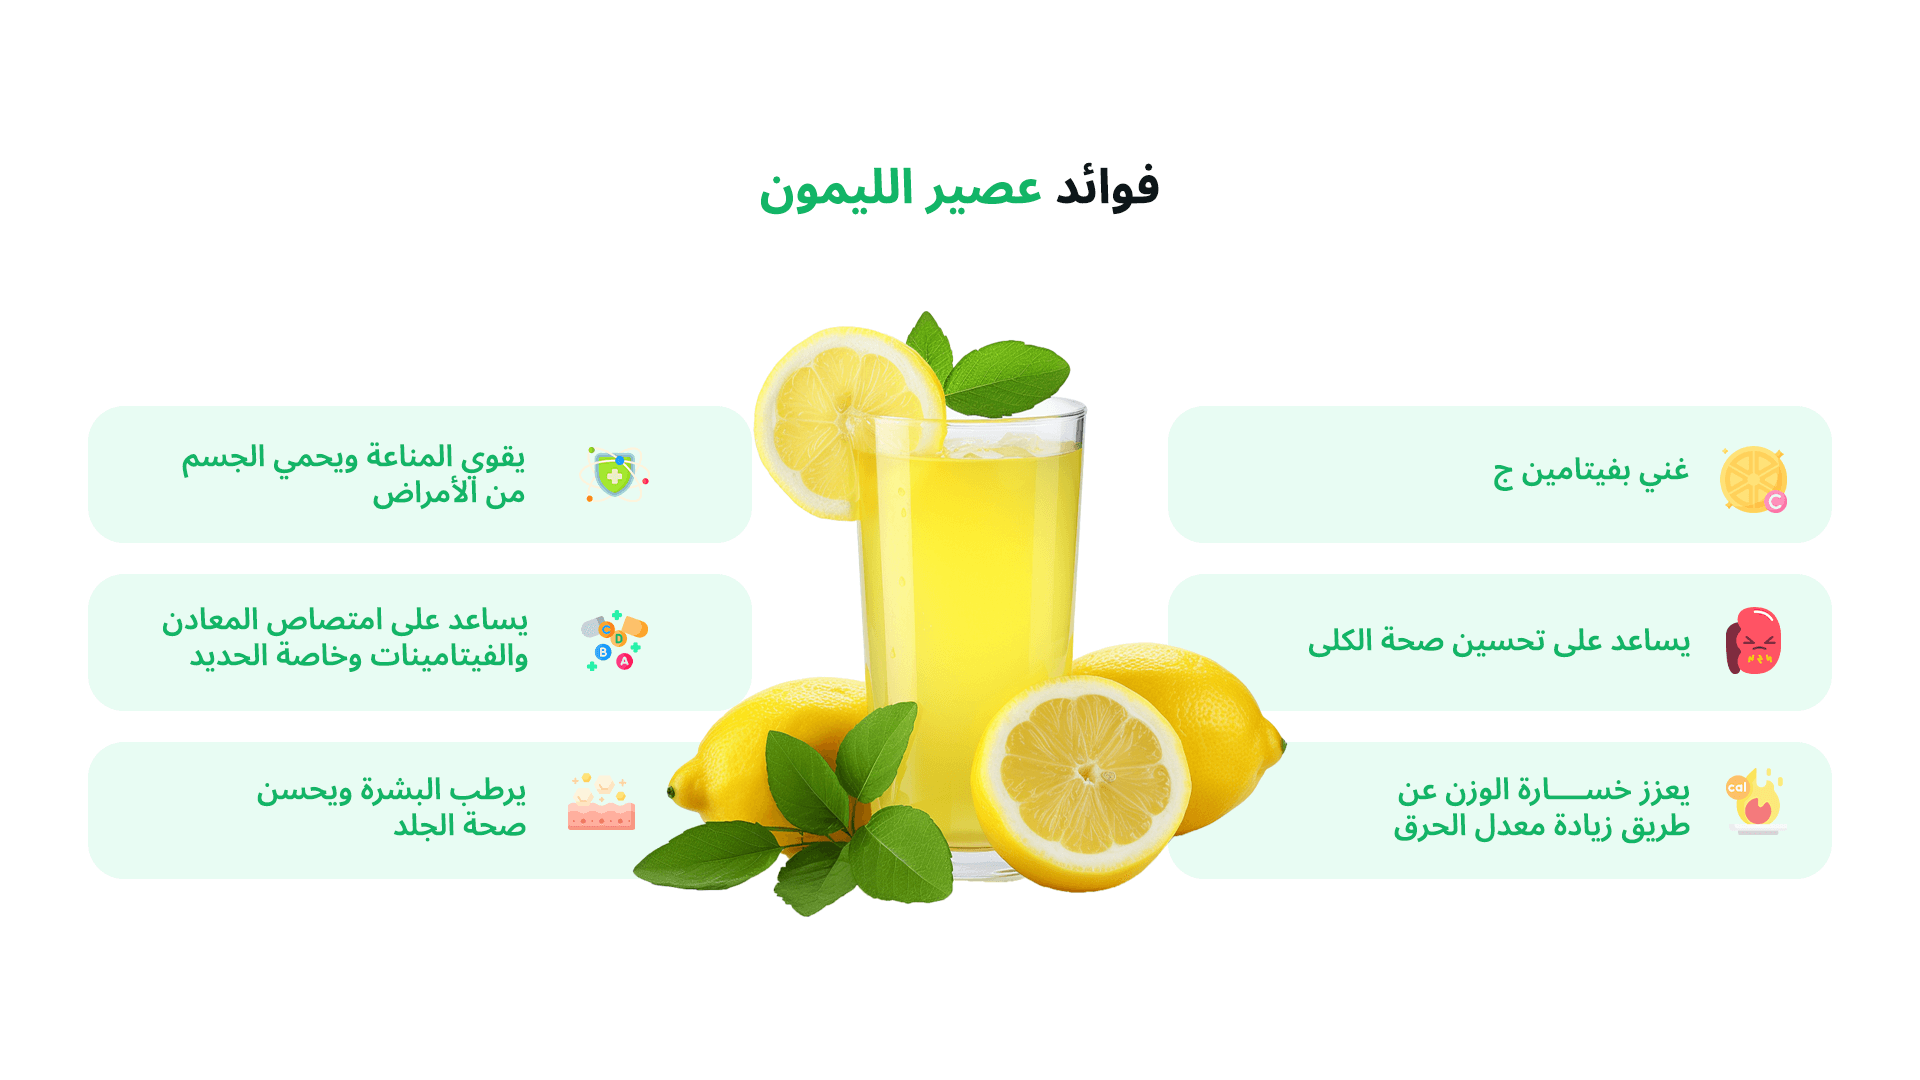 الصورة أنفوغراف "انفوجراف" يظهر في المنتصف كوب من عصير الليمون به أوراق من النعناع أو الليموناضة وحواليها تنتشر فوائد شرب عصير الليمون